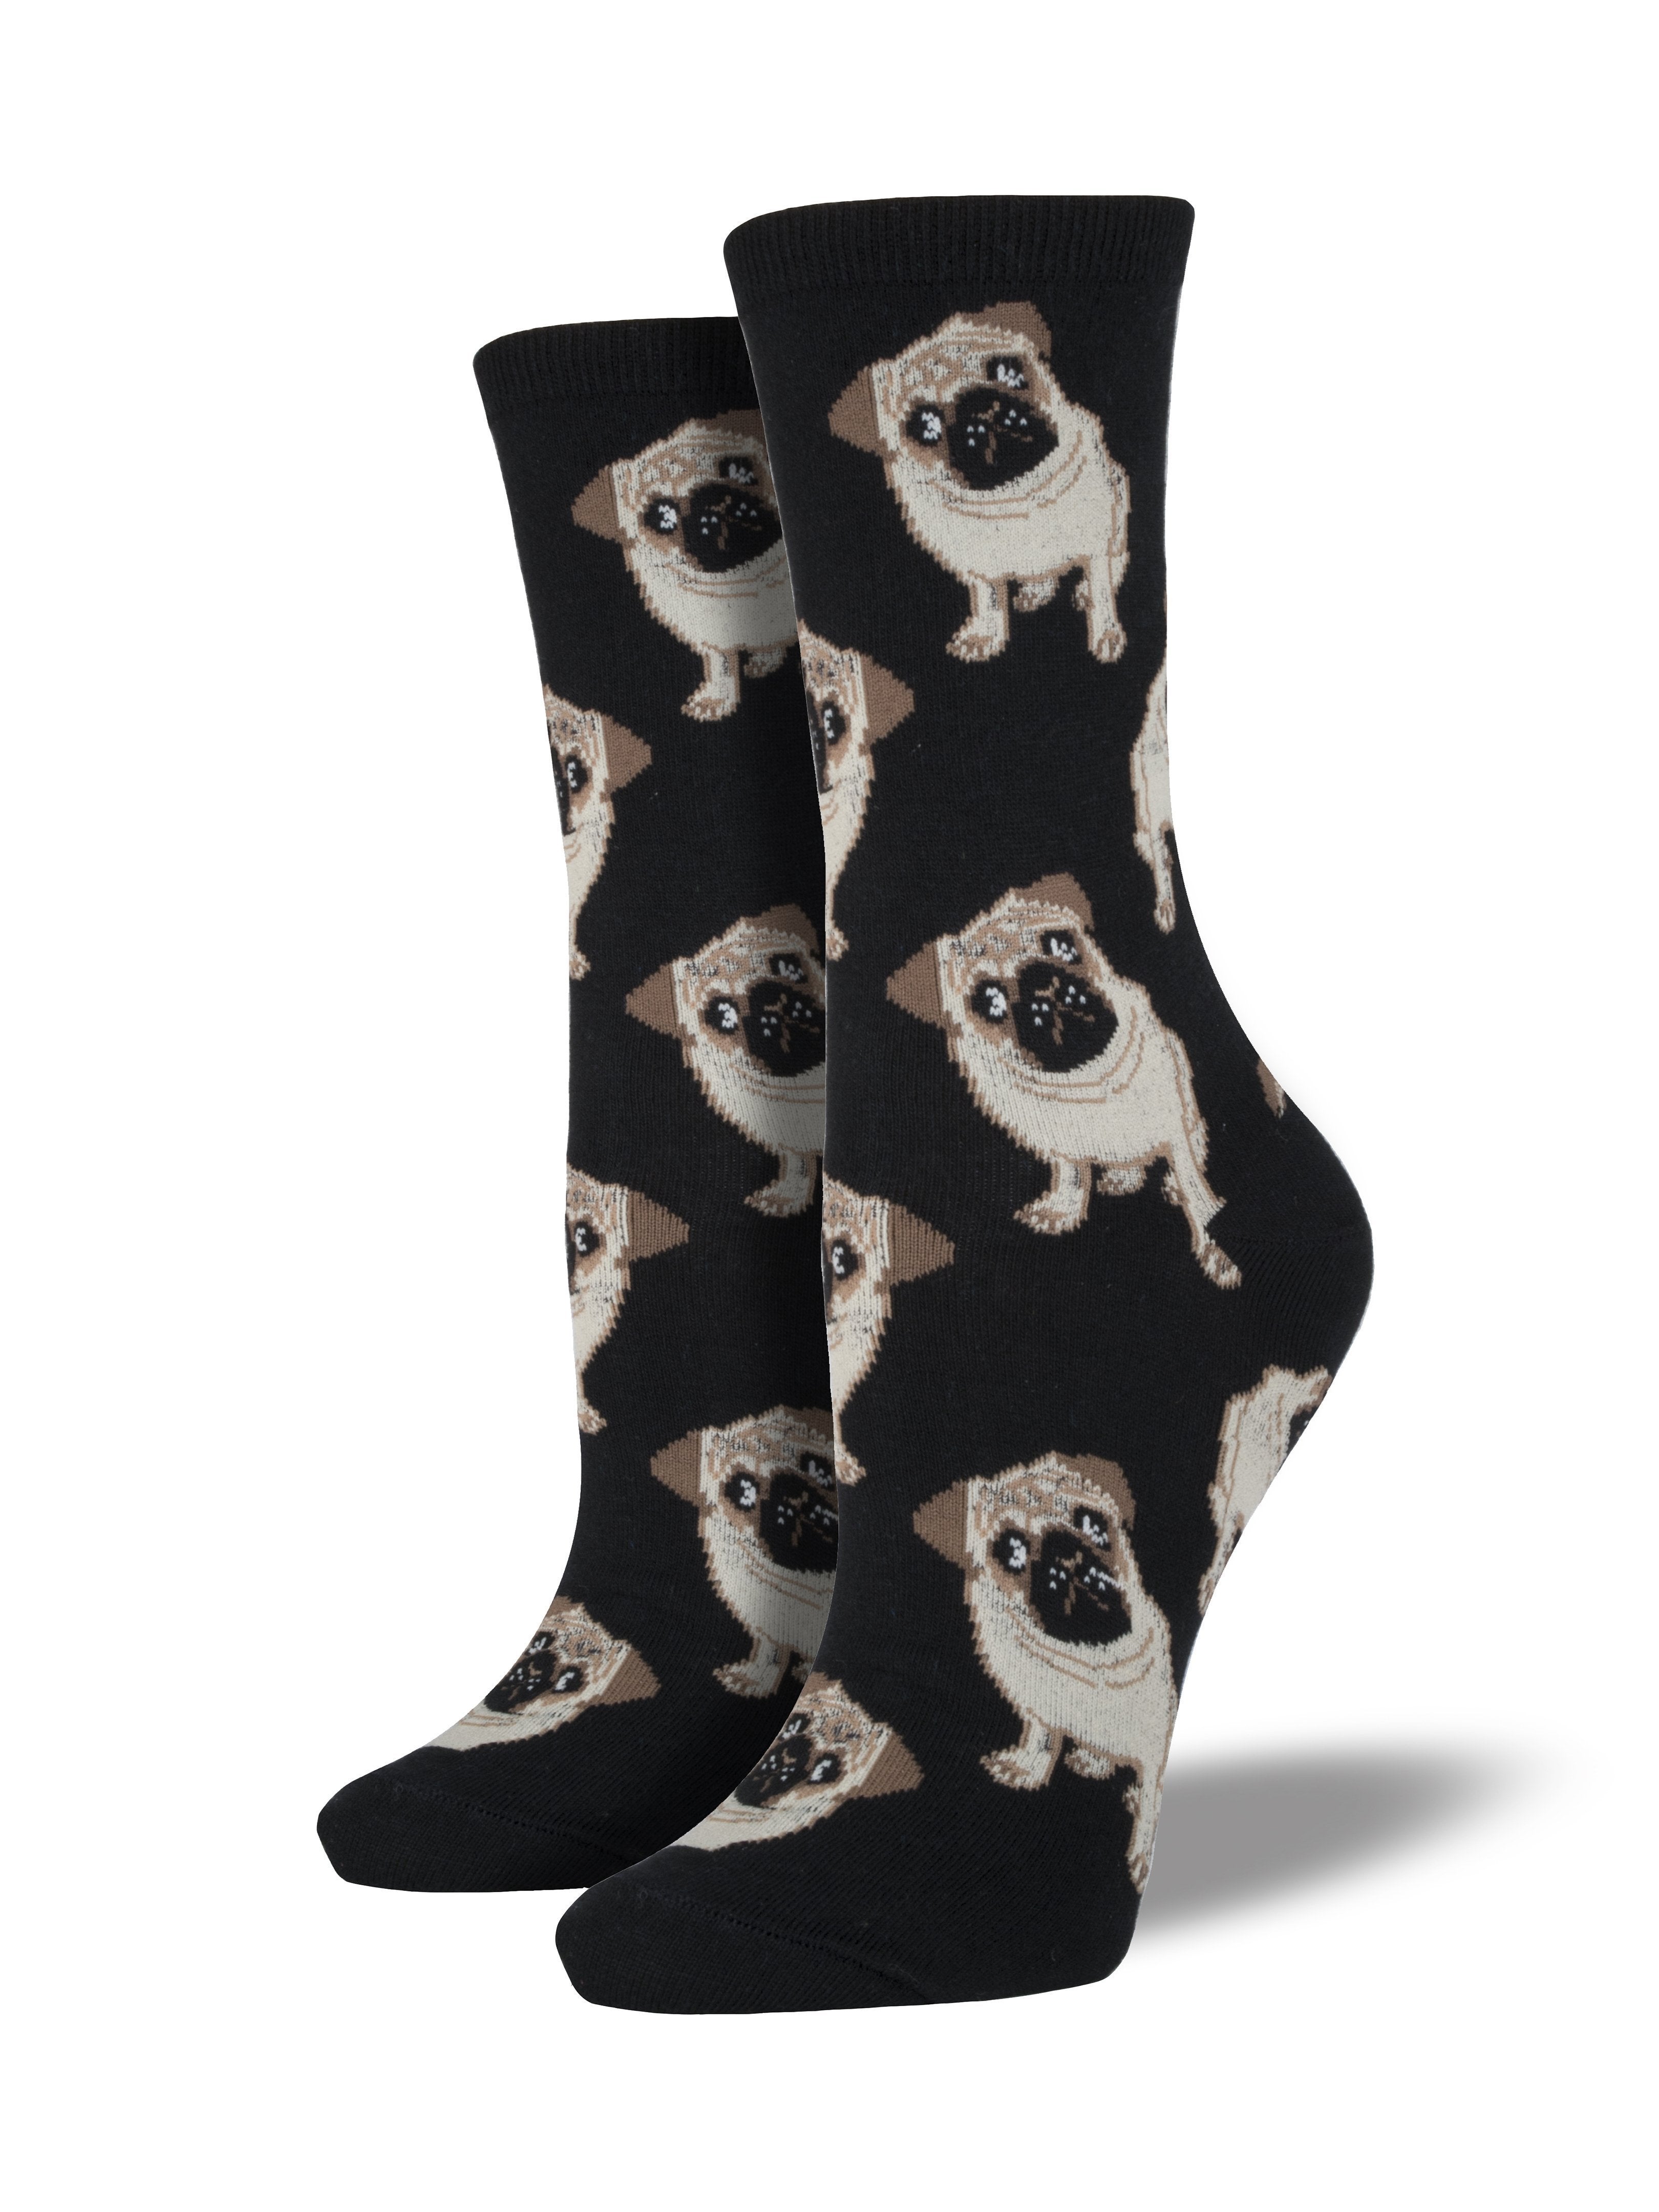 Women's "Pugs" Socks